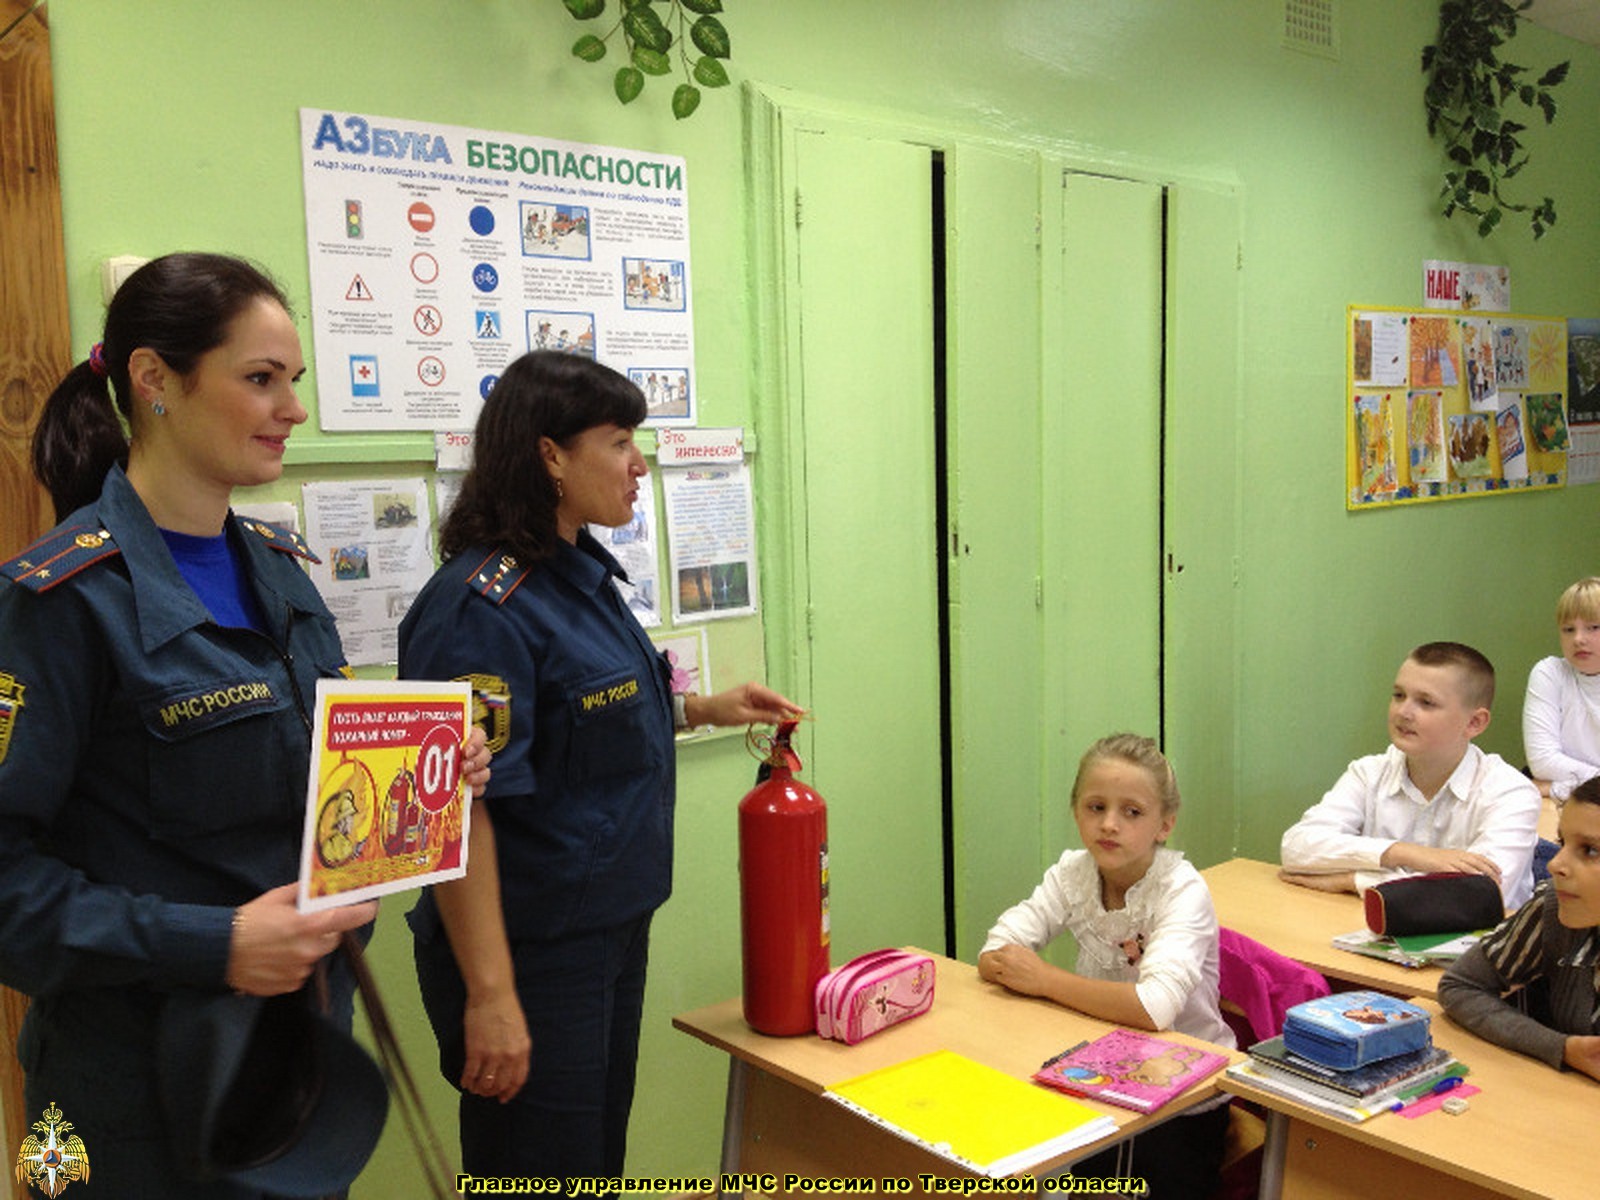 Дни безопасности в образовательных учреждениях Тверской области